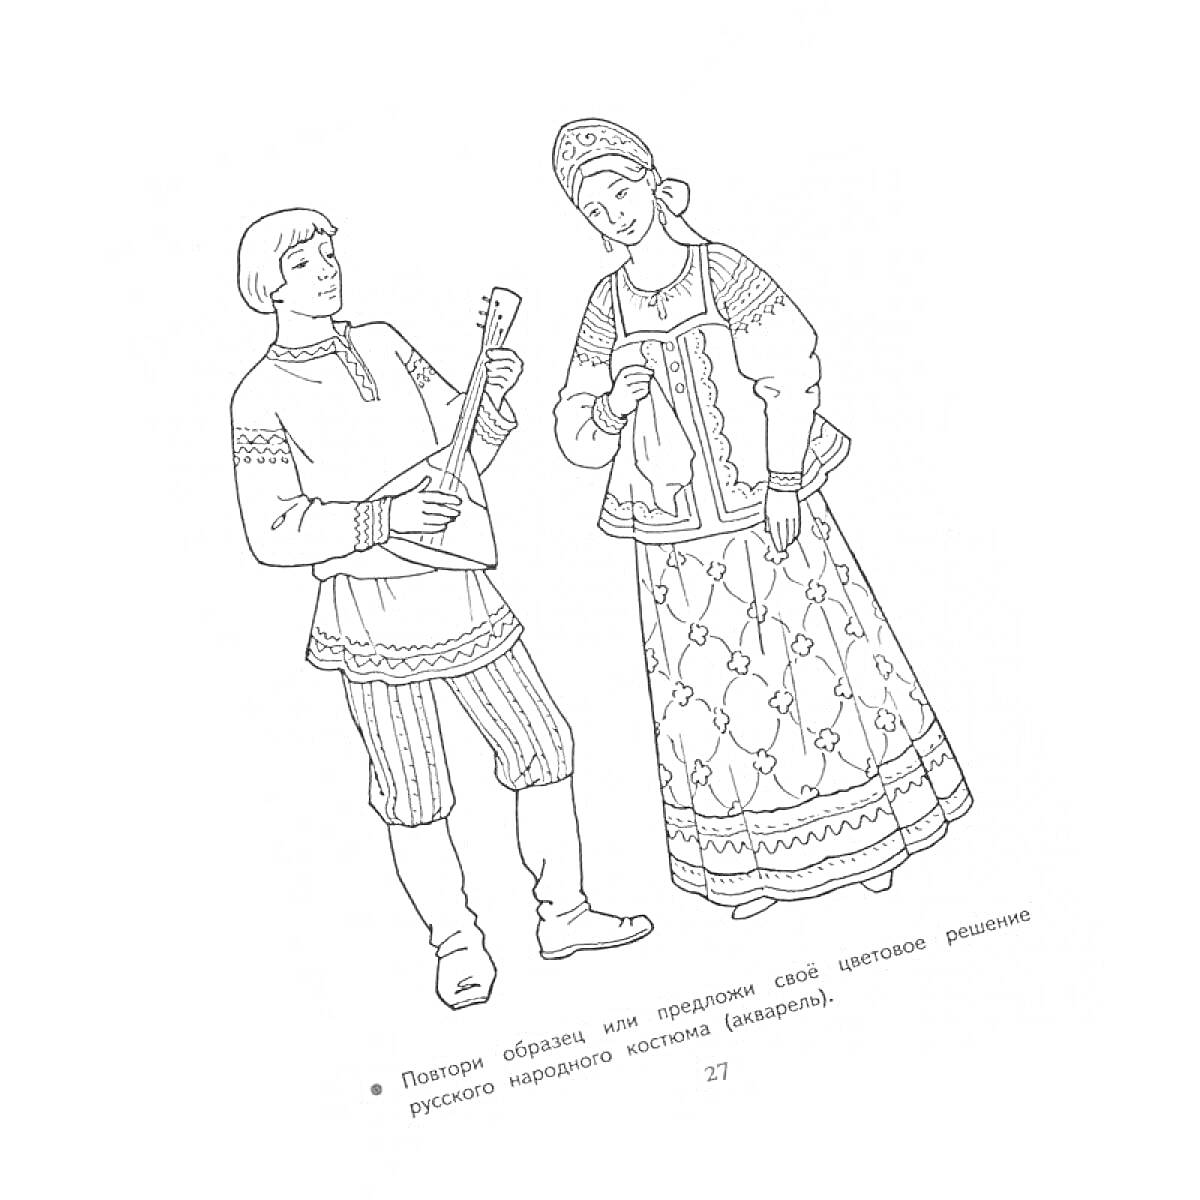 Мужчина и женщина в русском народном костюме. На мужчине надета косоворотка, полосатые штаны, сапоги, он играет на балалайке. На женщине надет кокошник, рубаха, сарафан, пояс и рукава с вышивкой.